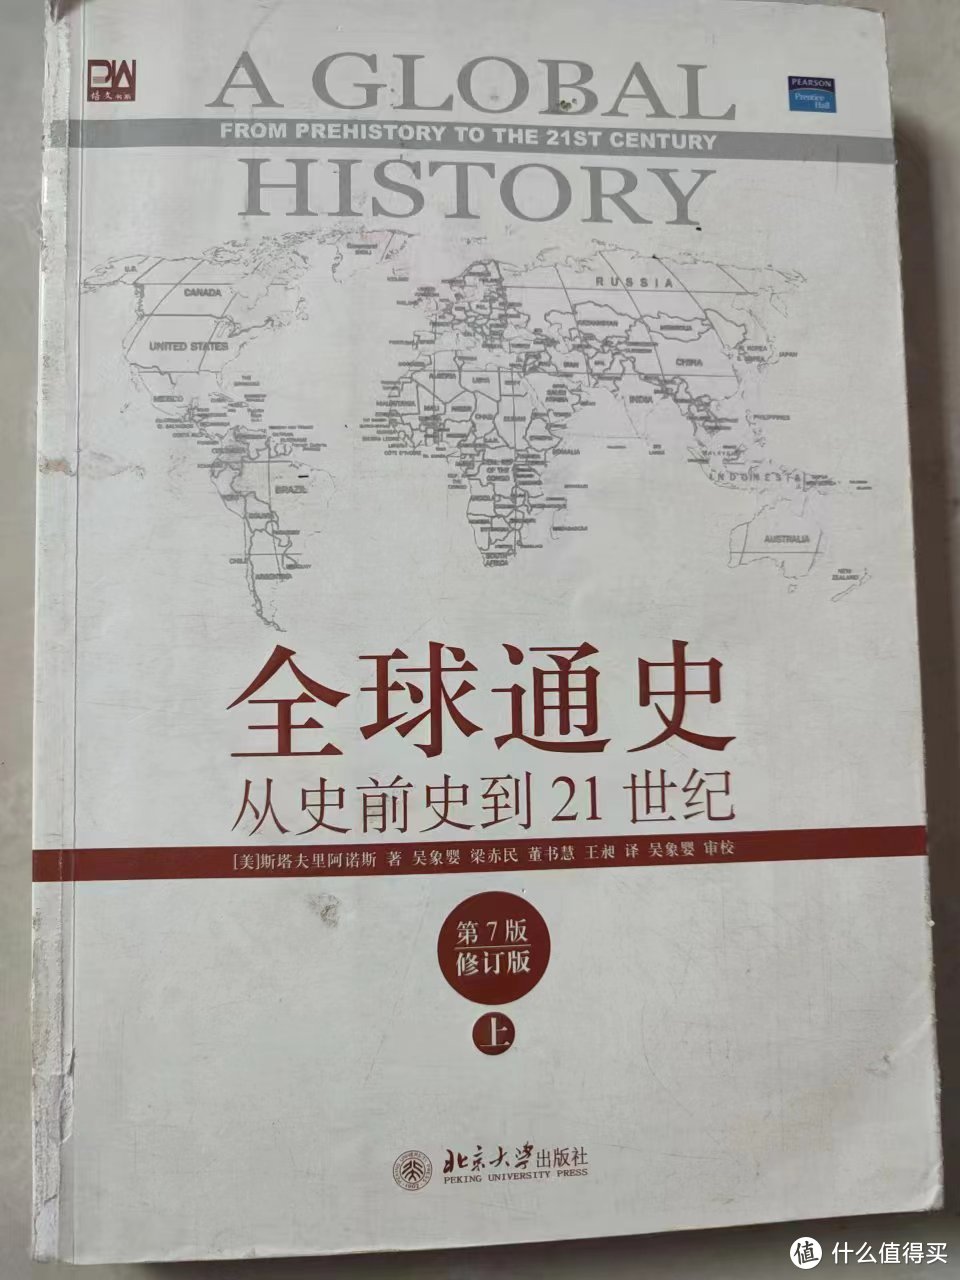 推荐一本非常适合阅读的人文类图书《全球通史》